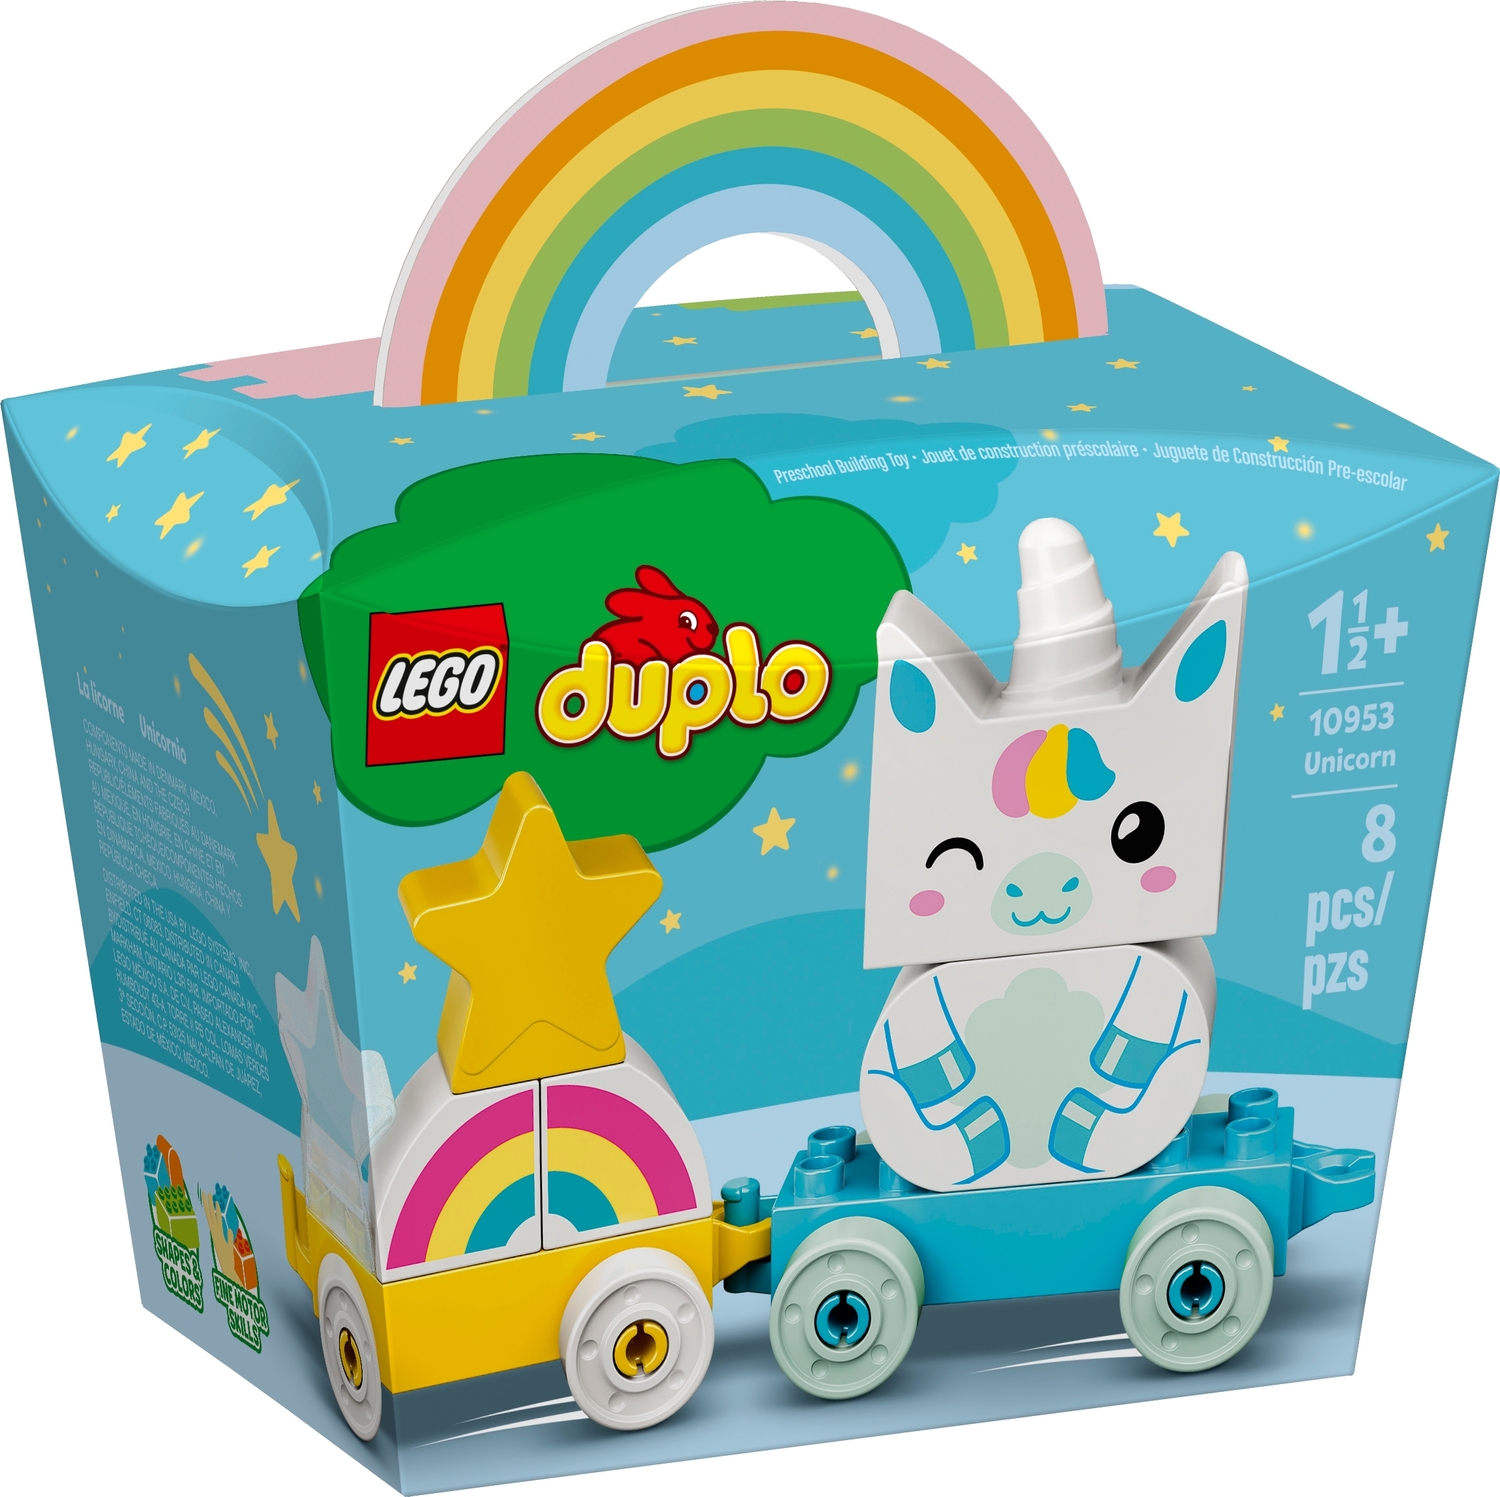 LEGO DUPLO: Unicorn - Imagination Toys